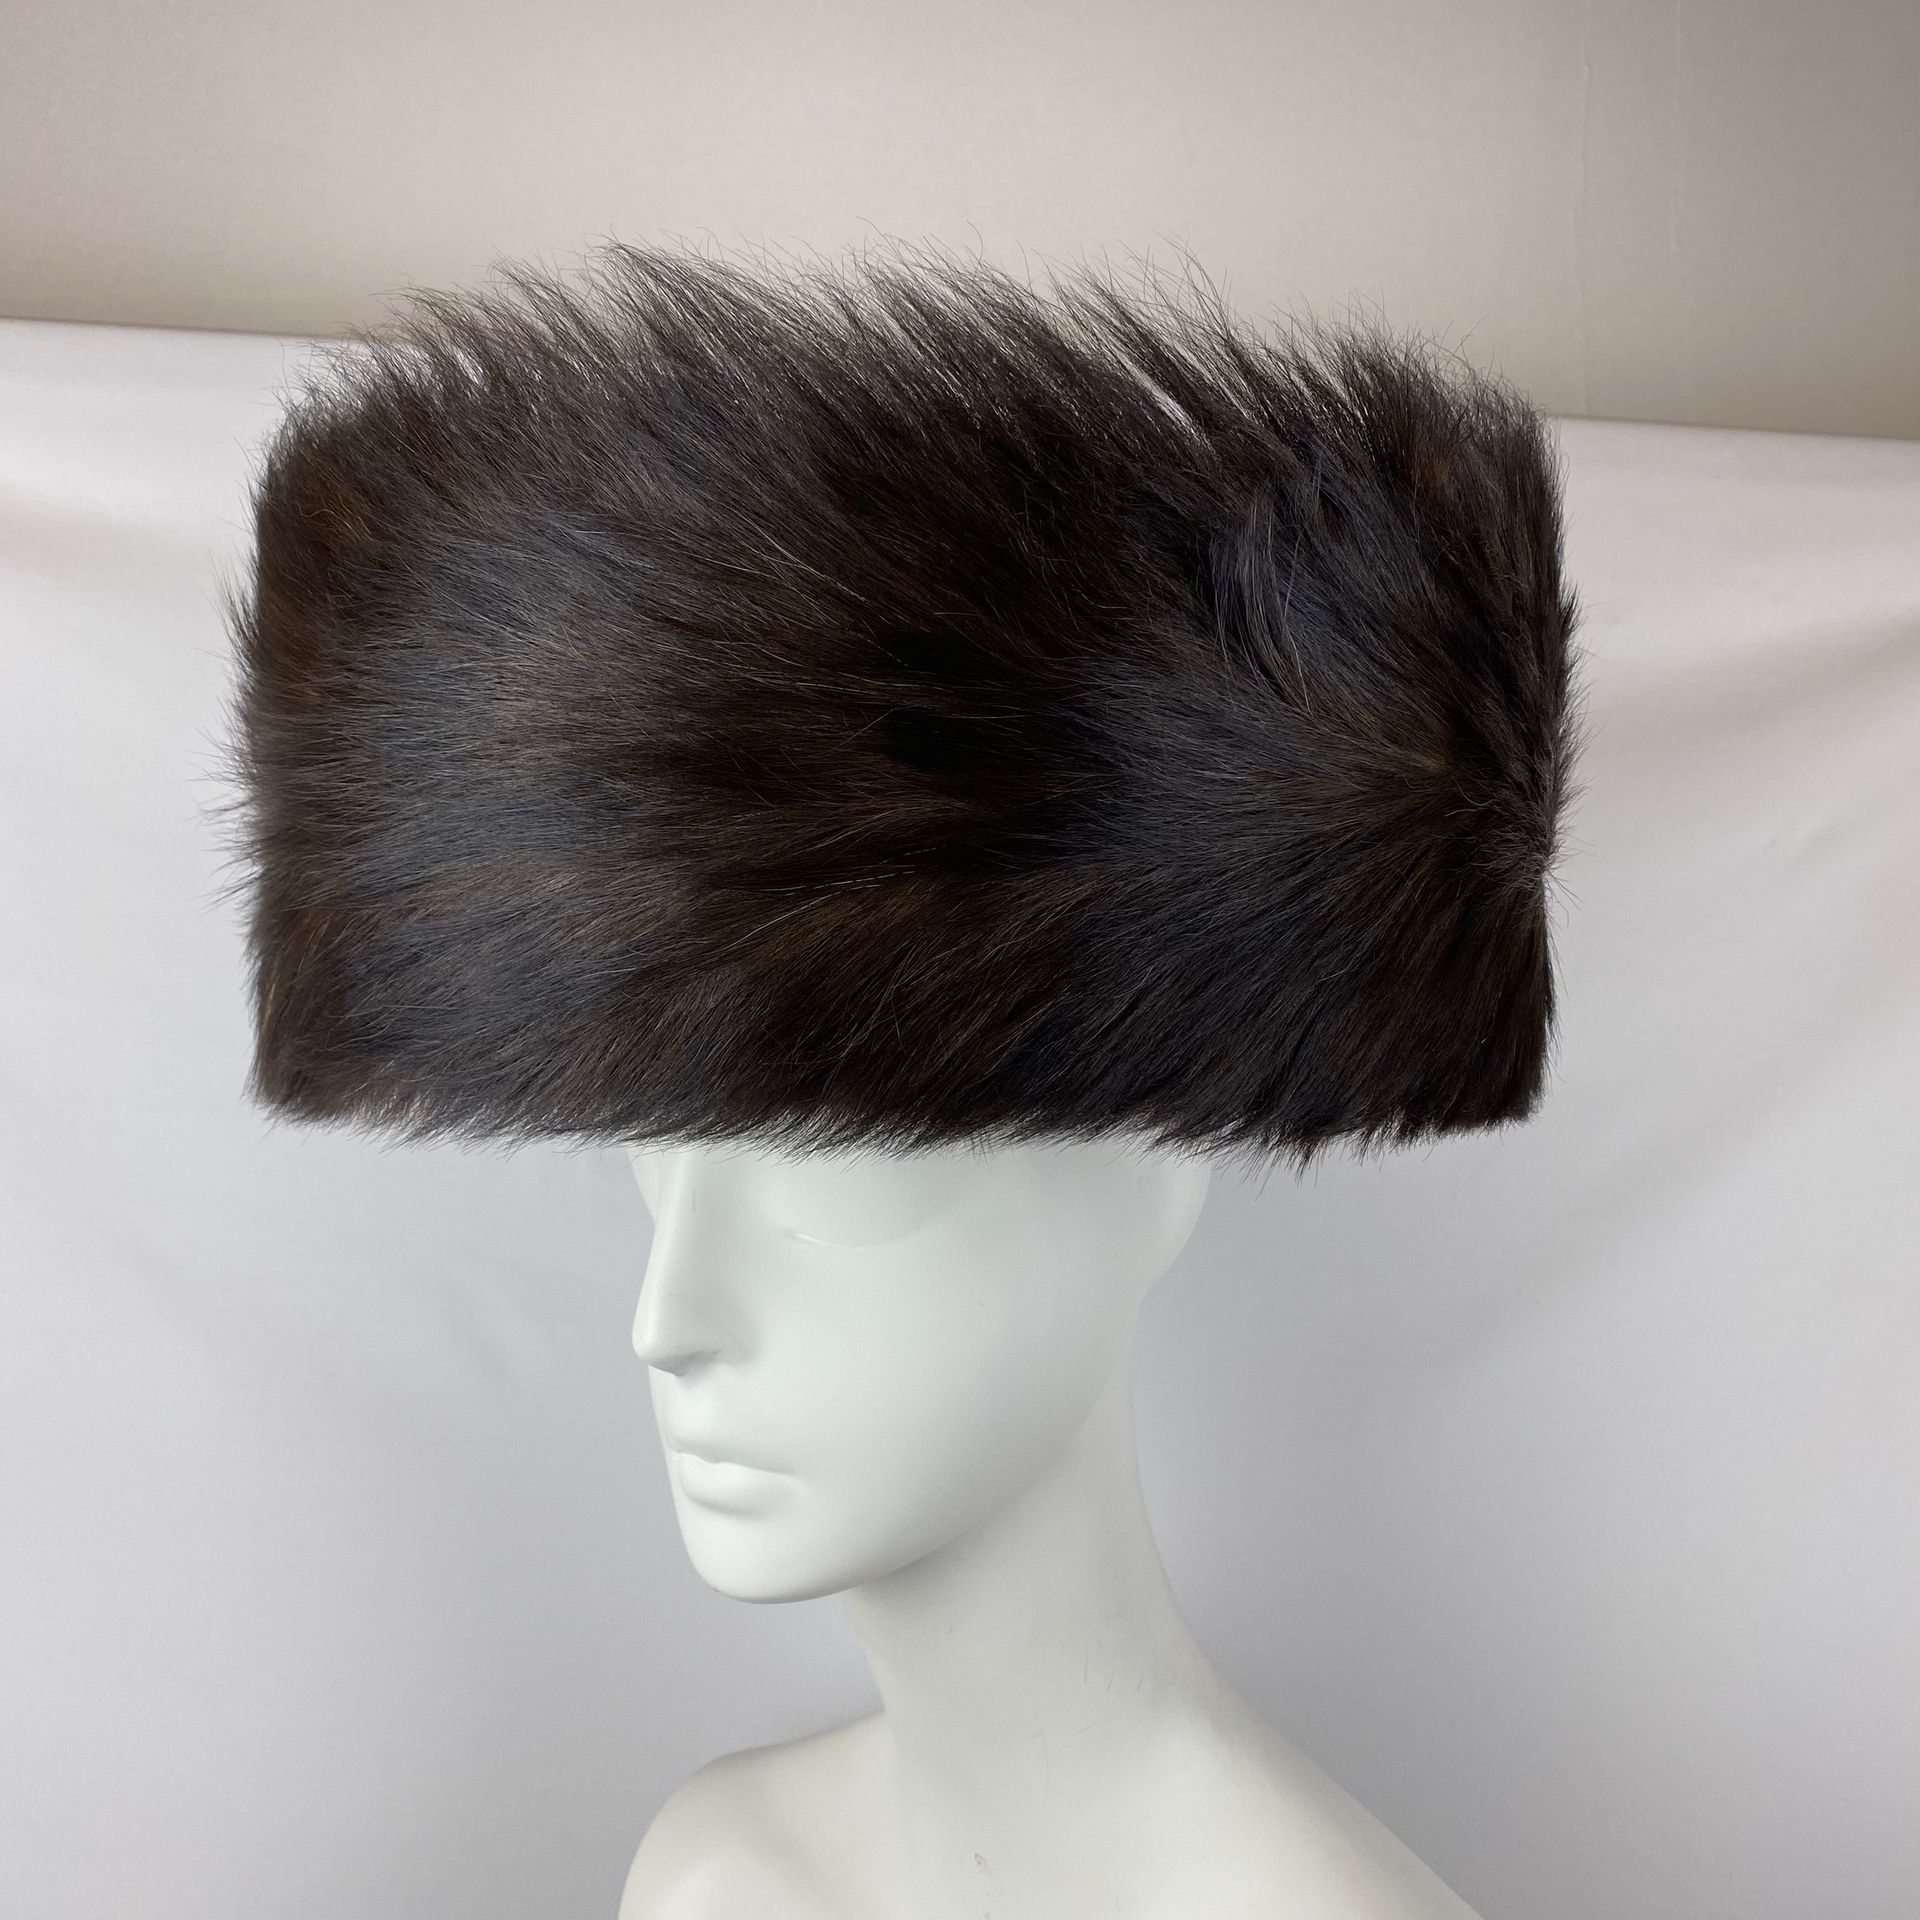 SCHTREIMEL SCHTREIMEL宽檐帽，周围有黑貂皮，头部尺寸为59厘米，装在手提箱中。